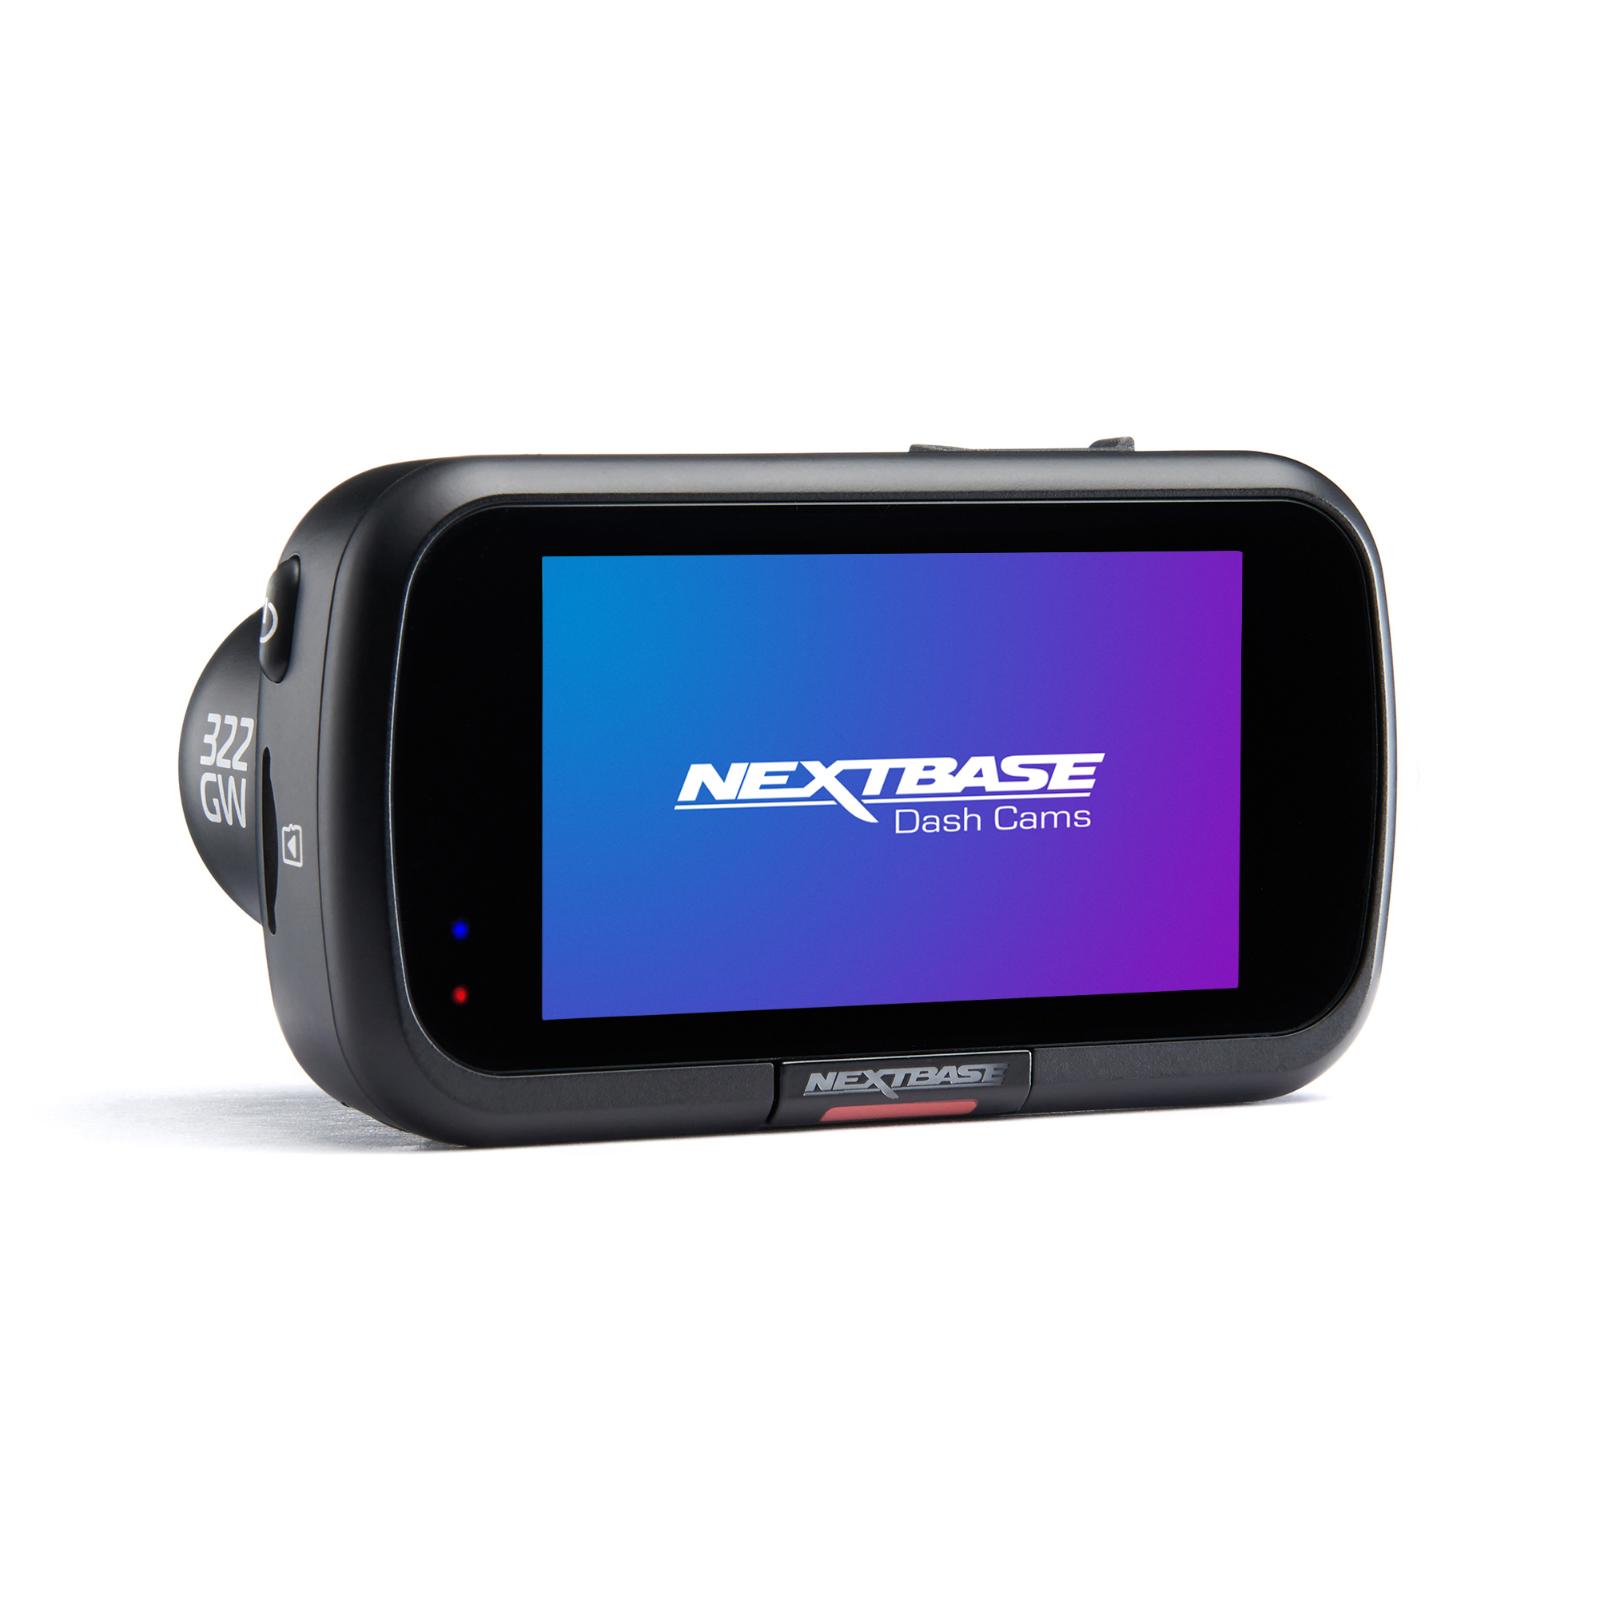 Nextbase 322GW Dash Camera